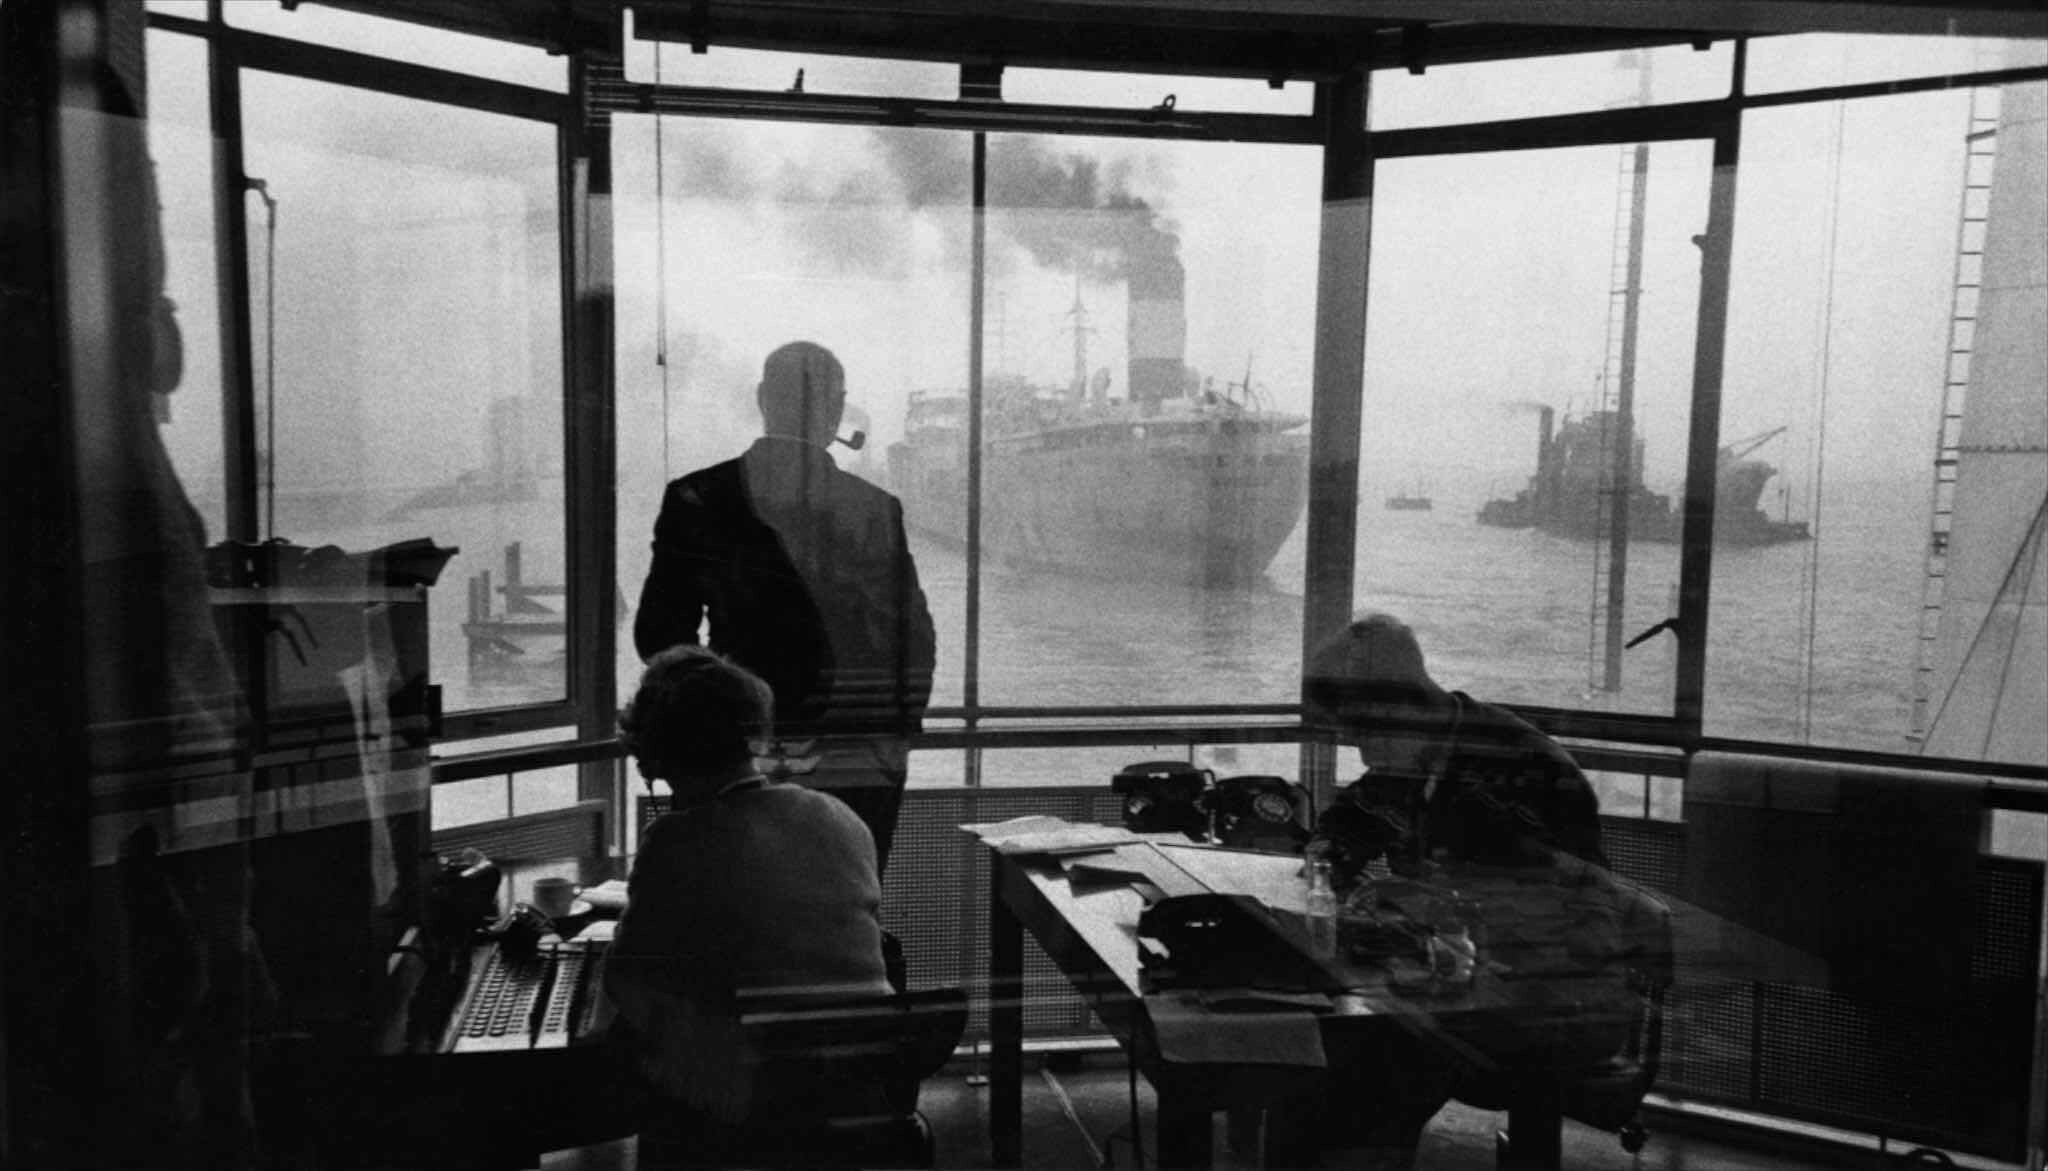 Манчестер, Манчестерский судоходный канал, 1955 год. Фотограф Франк Хорват